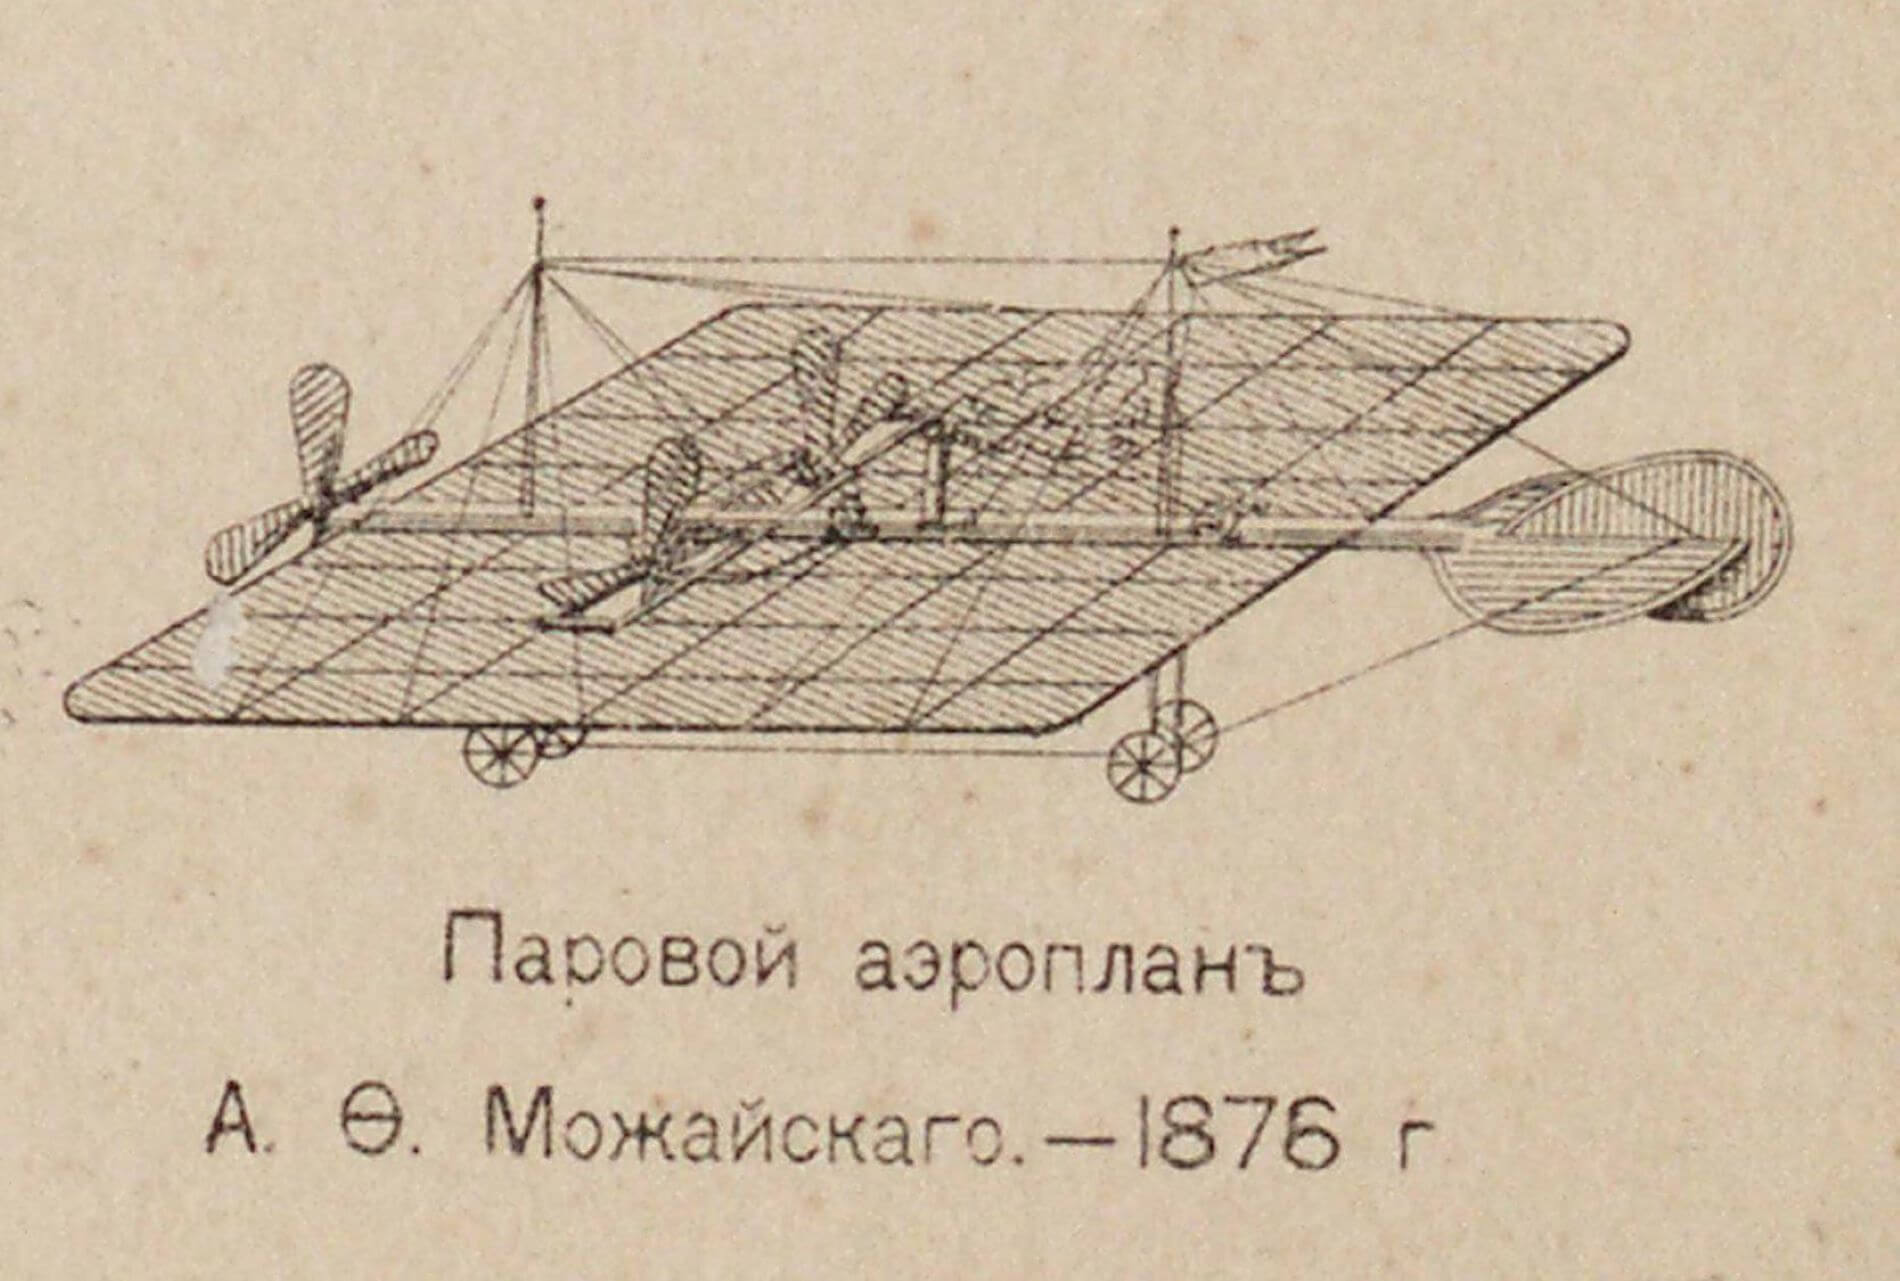 Mozhaysky aeroplane